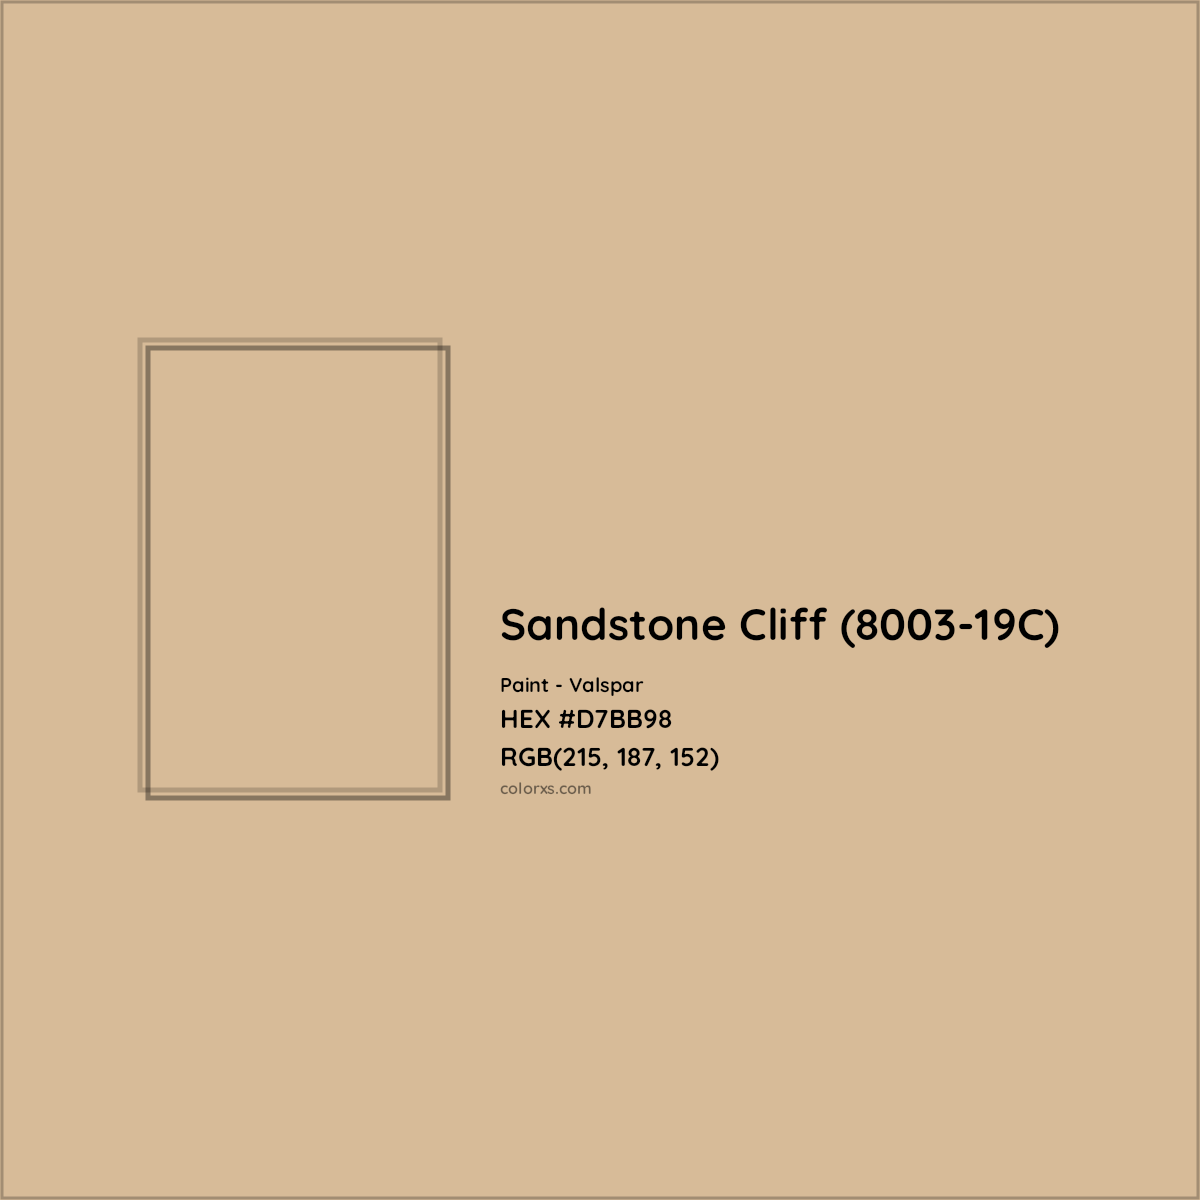 HEX #D7BB98 Sandstone Cliff (8003-19C) Paint Valspar - Color Code